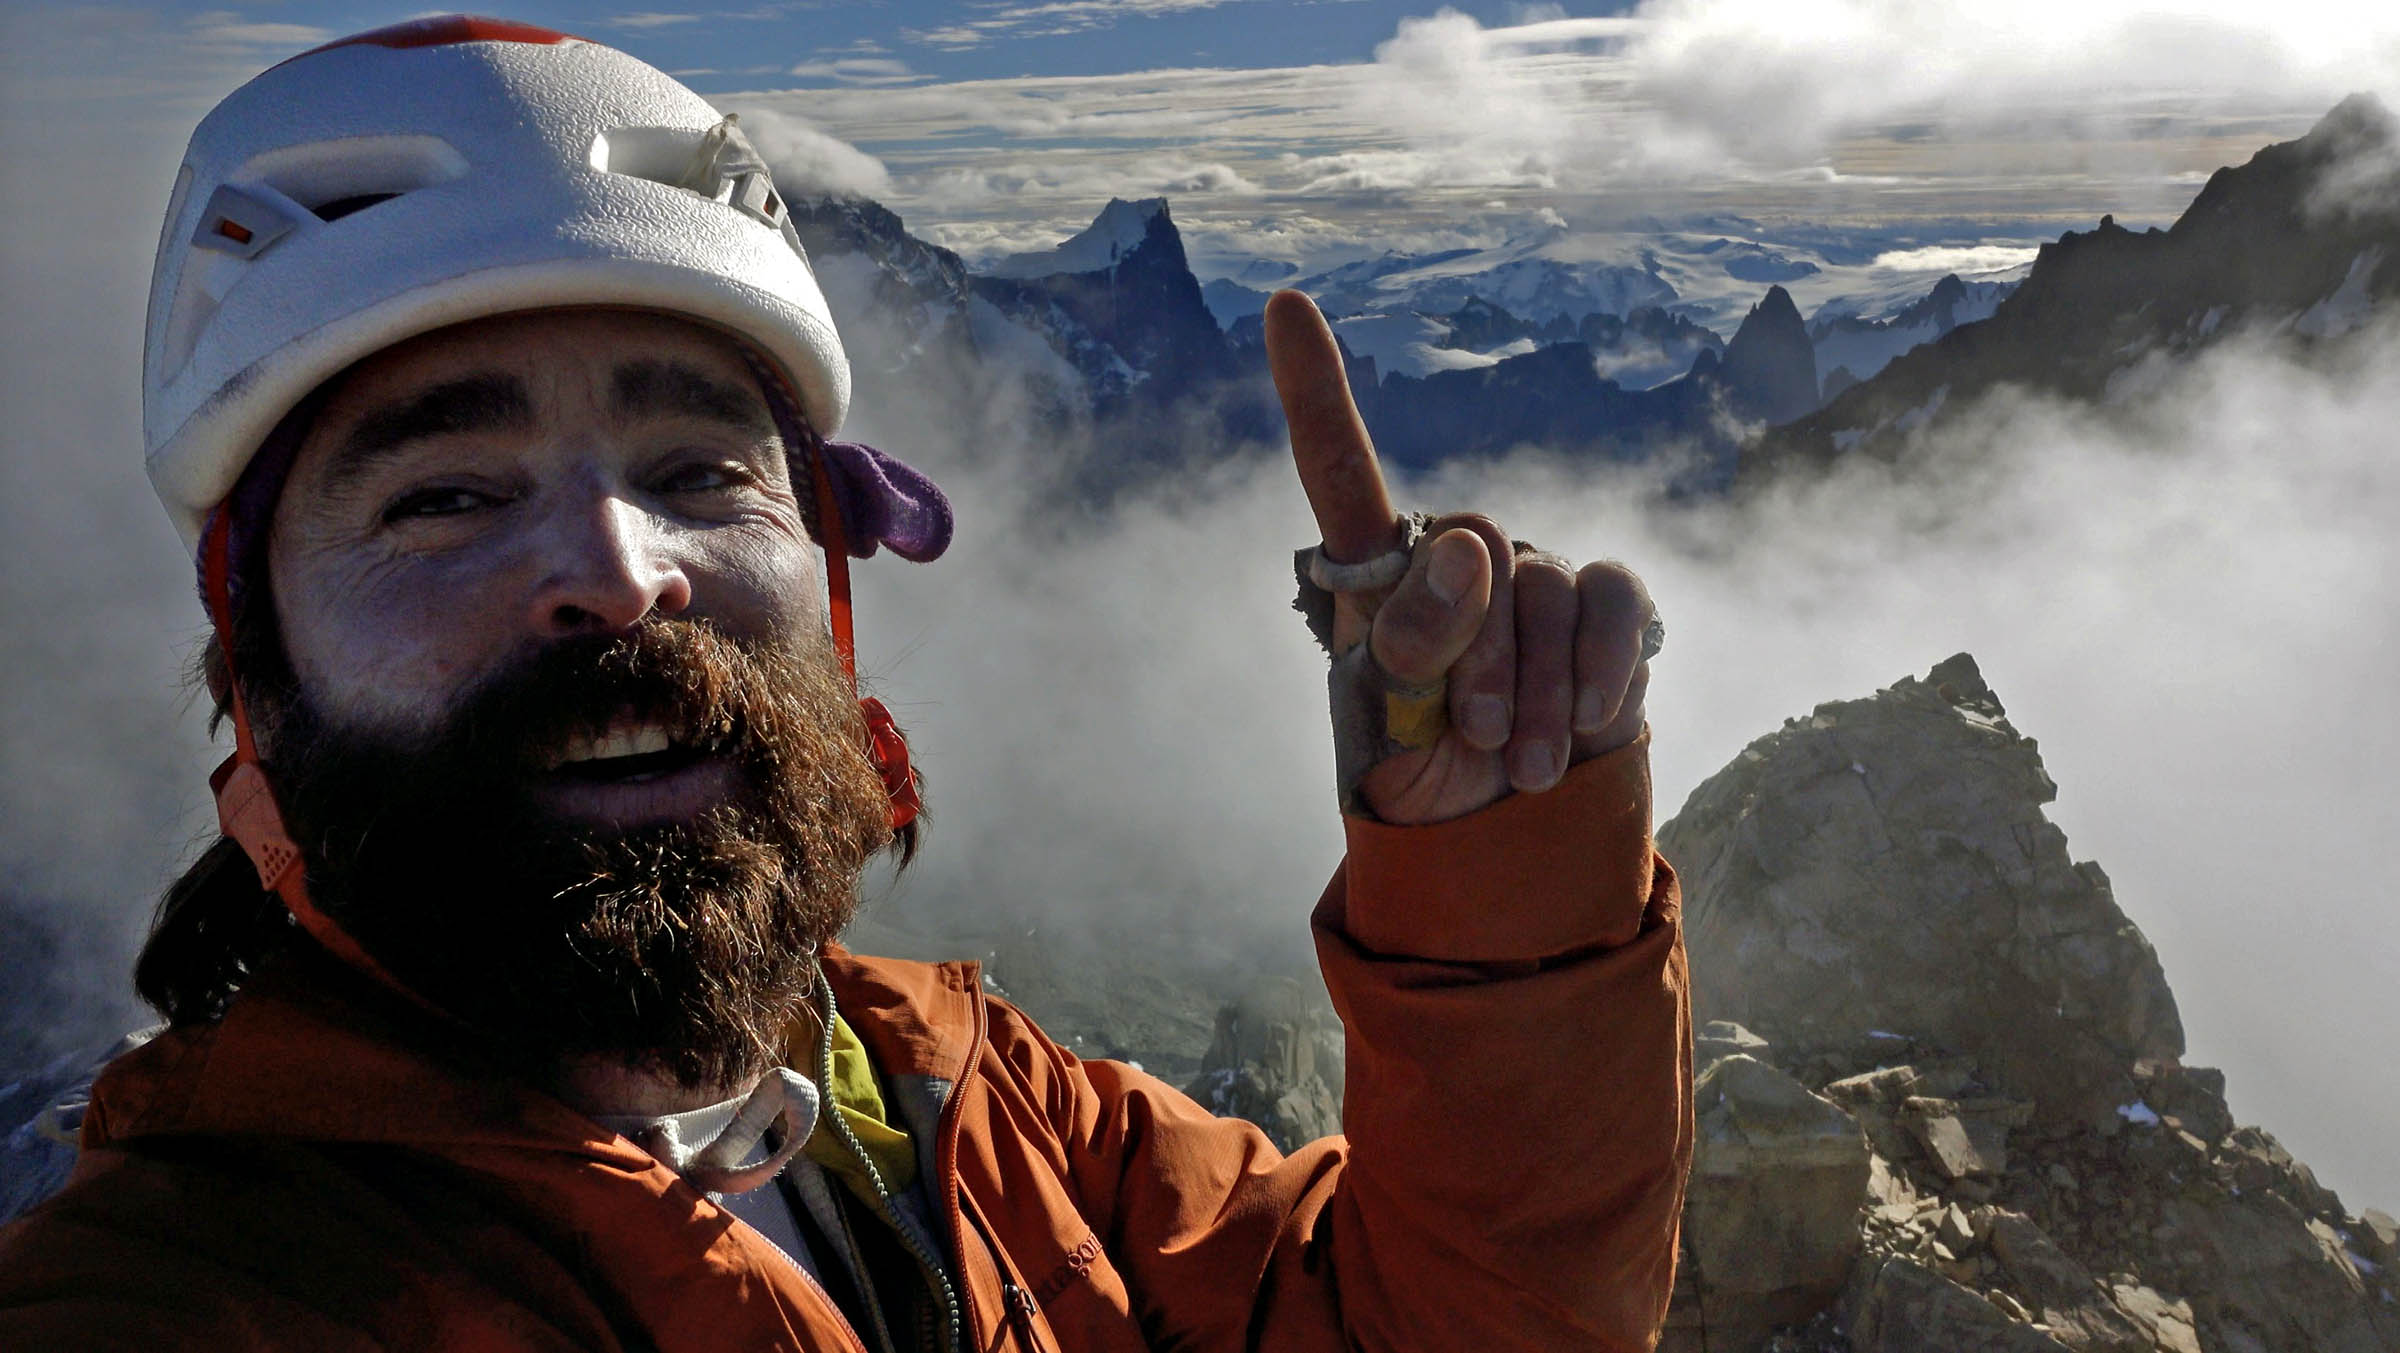 Sean Villanueva, escalador que subió las cuatro Torres del Paine: «Hay mucha gente con récords de velocidad, con un foco muy de logro deportivo de la escalada. Para mí el alpinismo tiene valores importantes, como el estilo y la amistad entre la cordada»